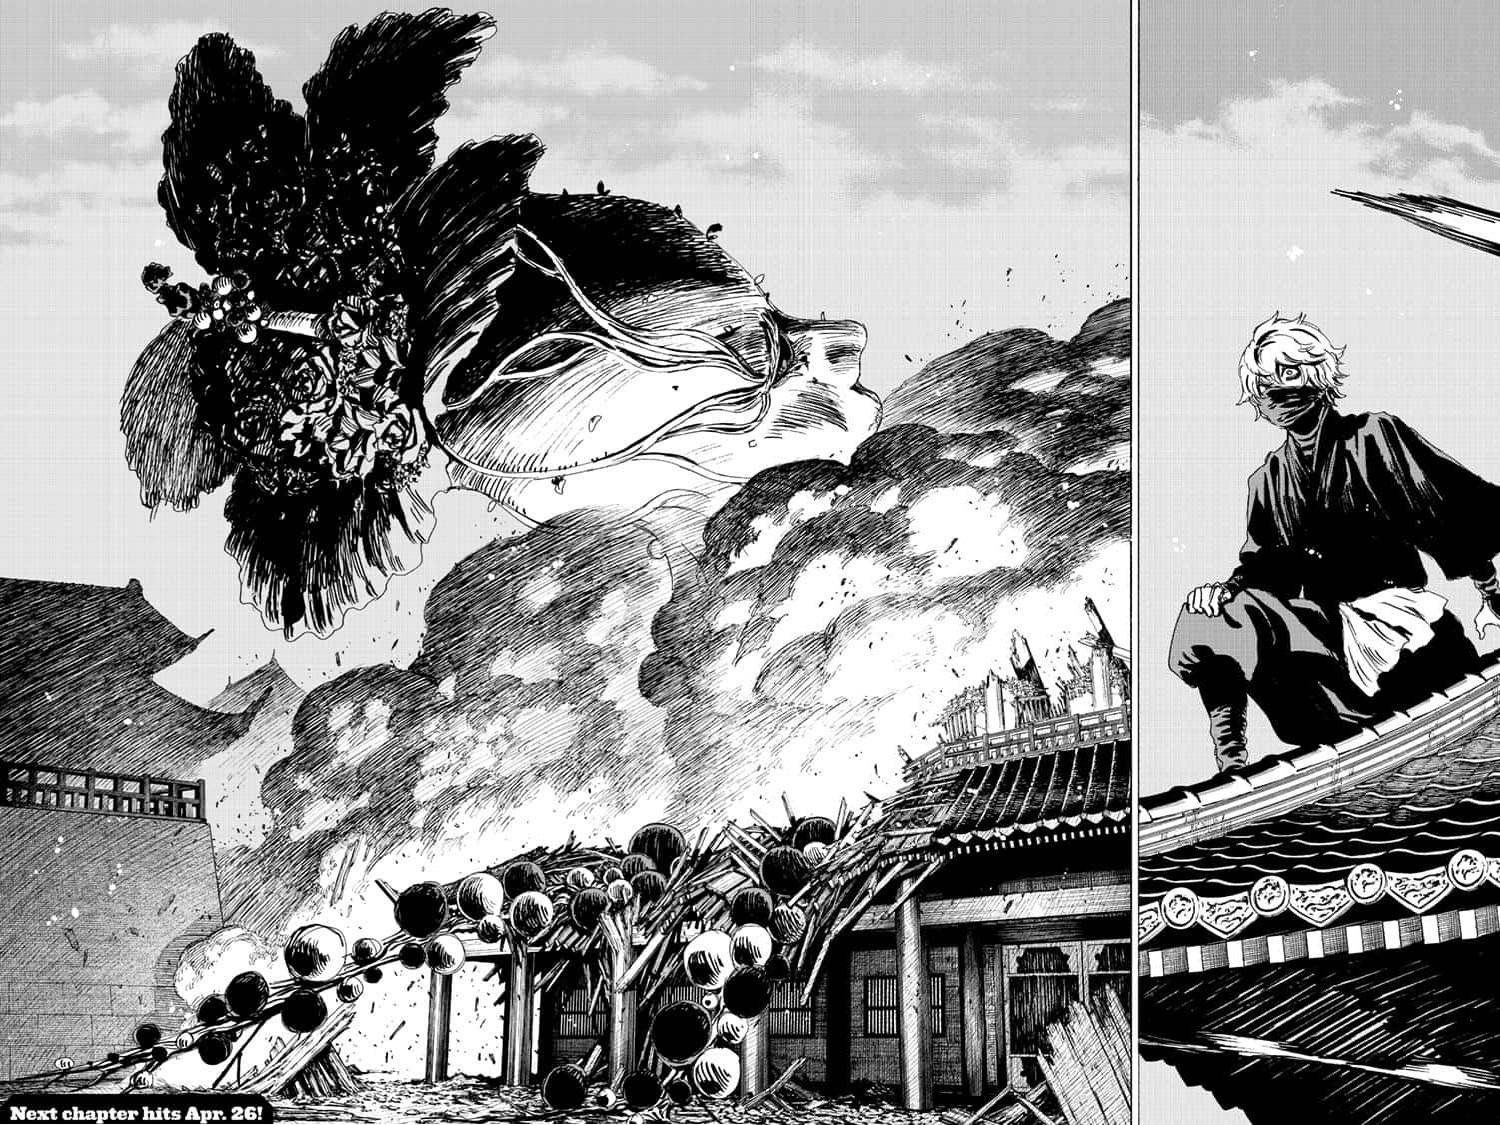 Hell's Paradise: Jigokuraku chapter></a></div>
<div class=